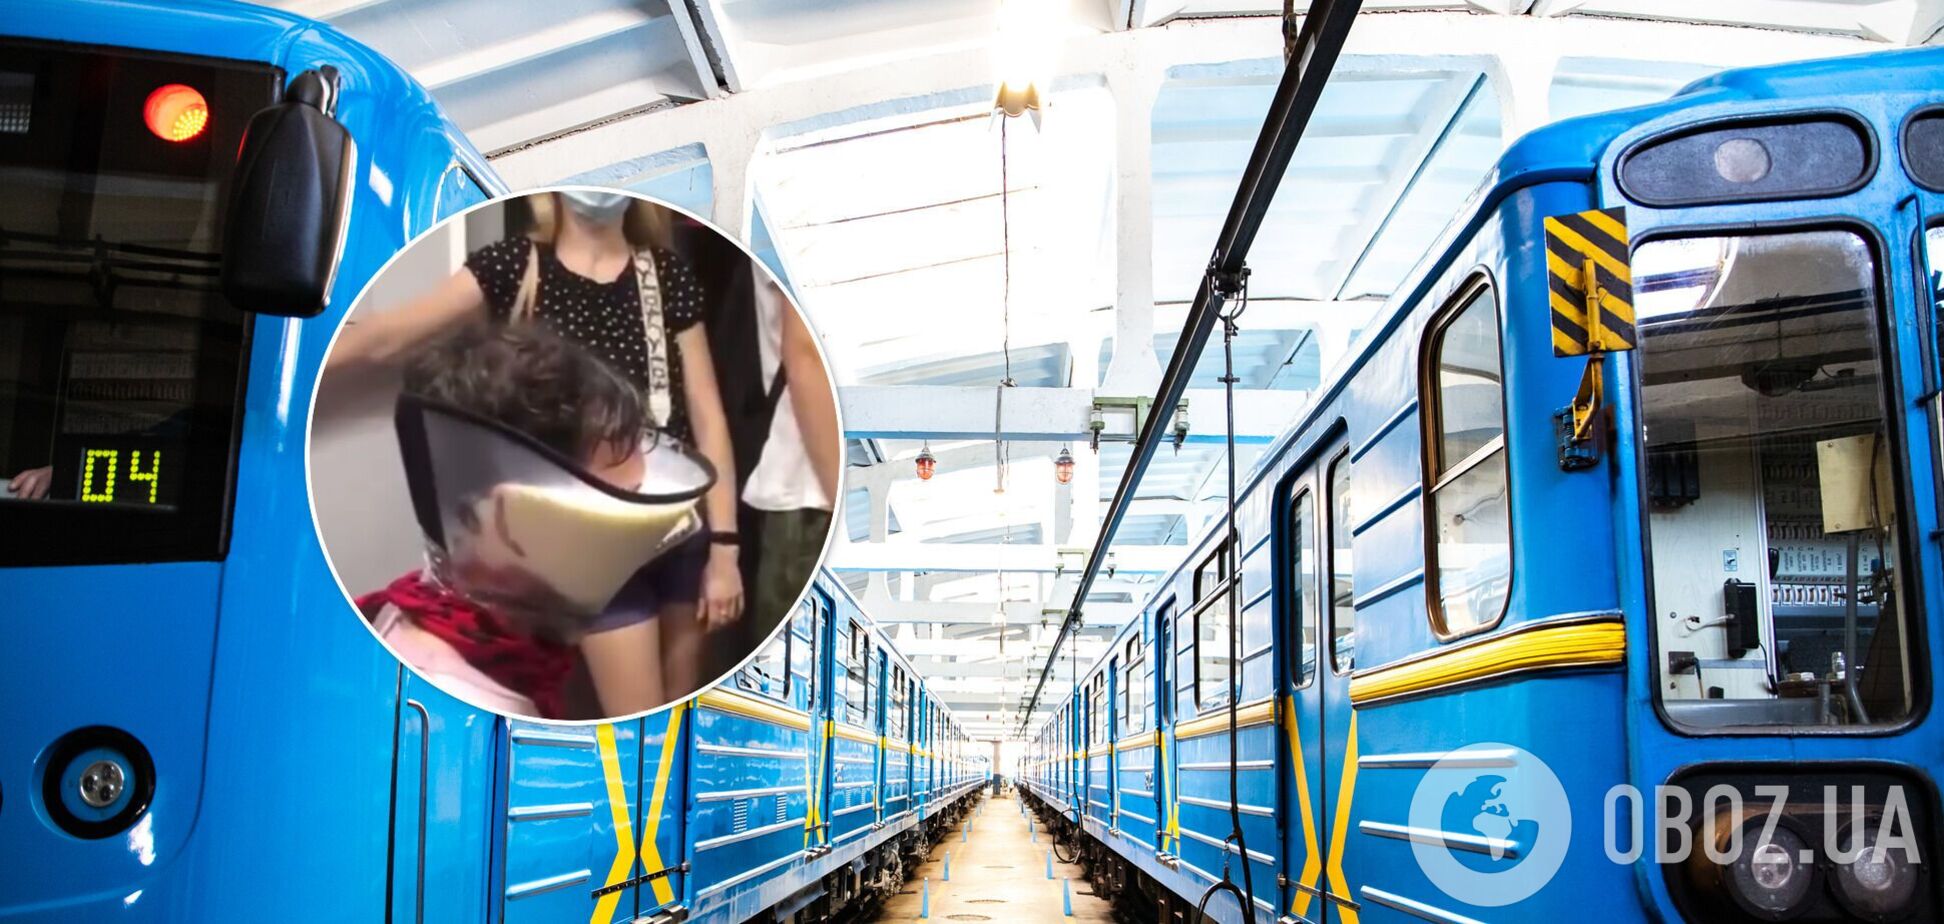 Скандал с блогерами в киевском метро